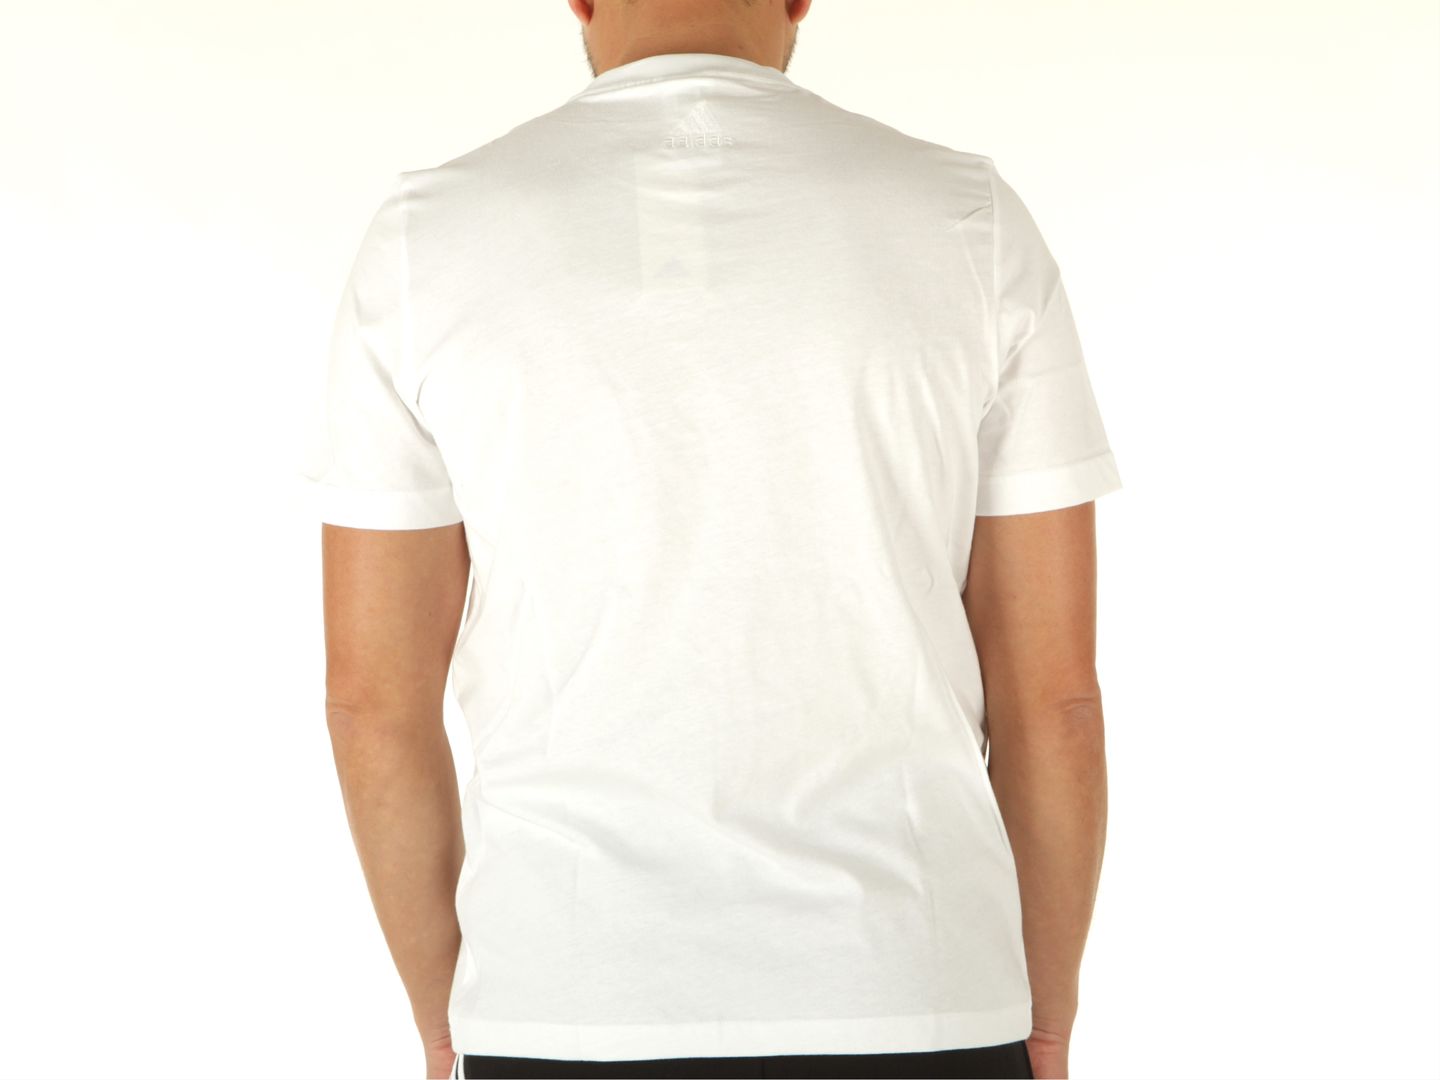 Marchio: Adidas - Genere: Uomo - Tipologia: T-shirt - Stagione: Primavera/EstateColore: bianco, Taglia: M